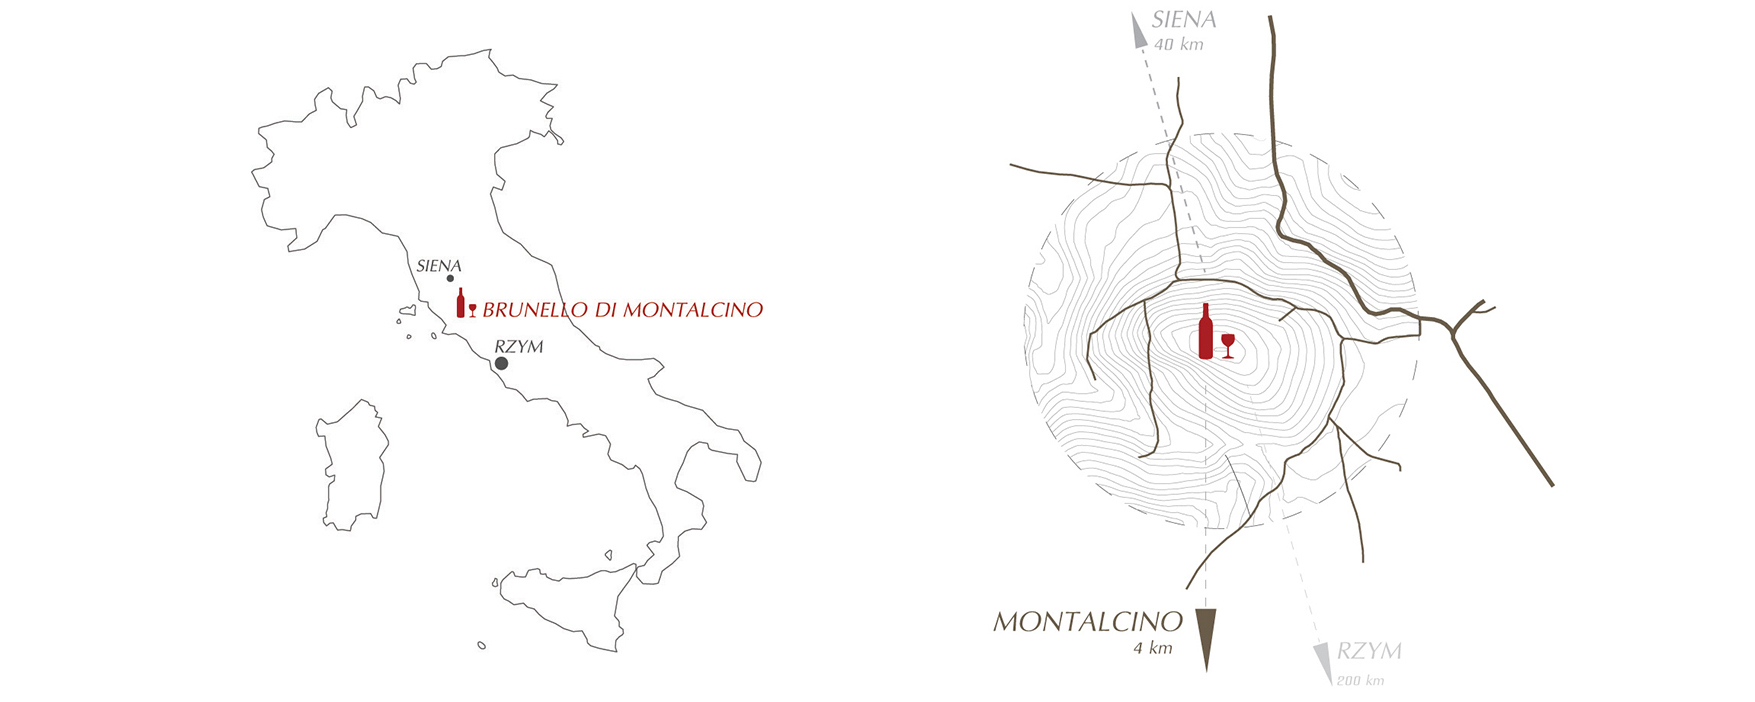 Schemat lokalizacji na mapie Włoch i regionu Montalcino